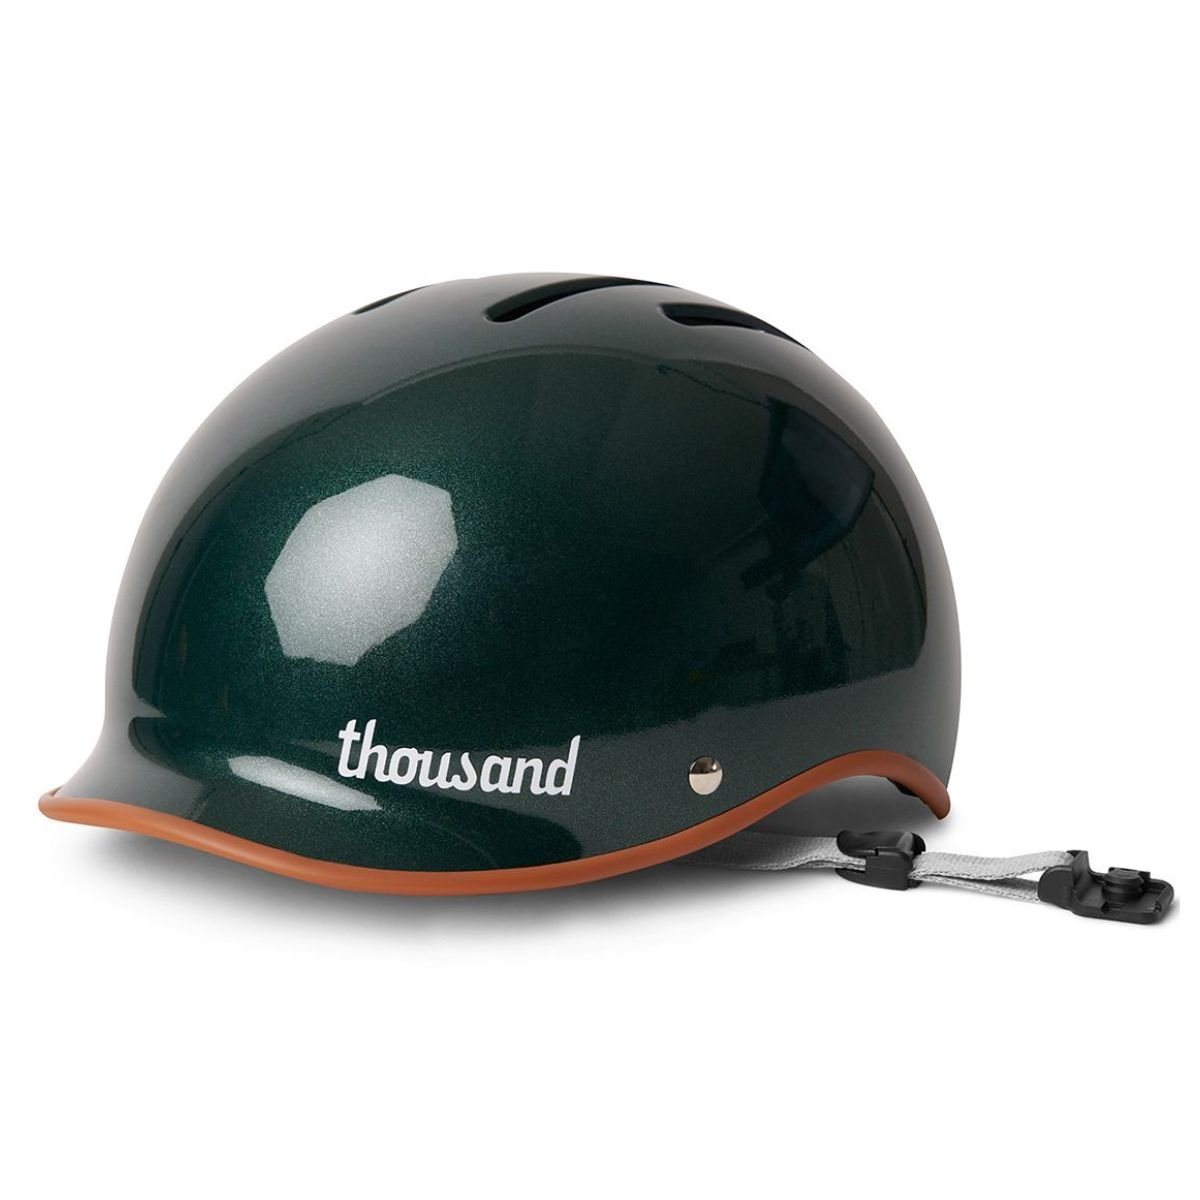 Thousand Heritage 2.0  Helmet